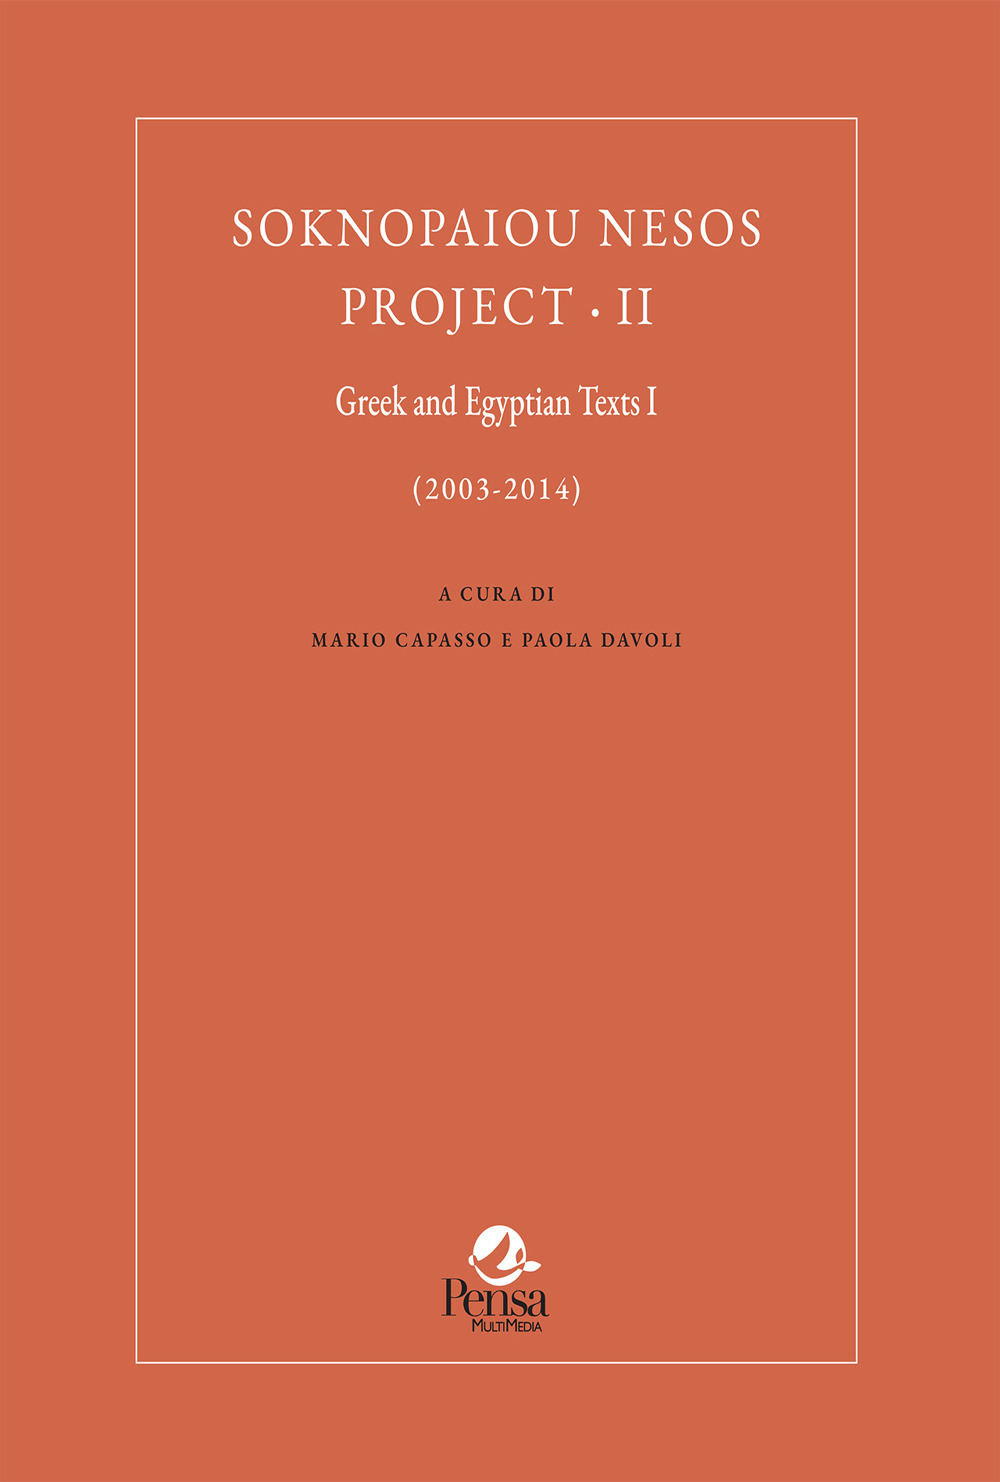 Soknopaiou Nesos Project. Ediz. italiana e inglese. Vol. 2: Greek and Egyptian texts I (2003-2014)